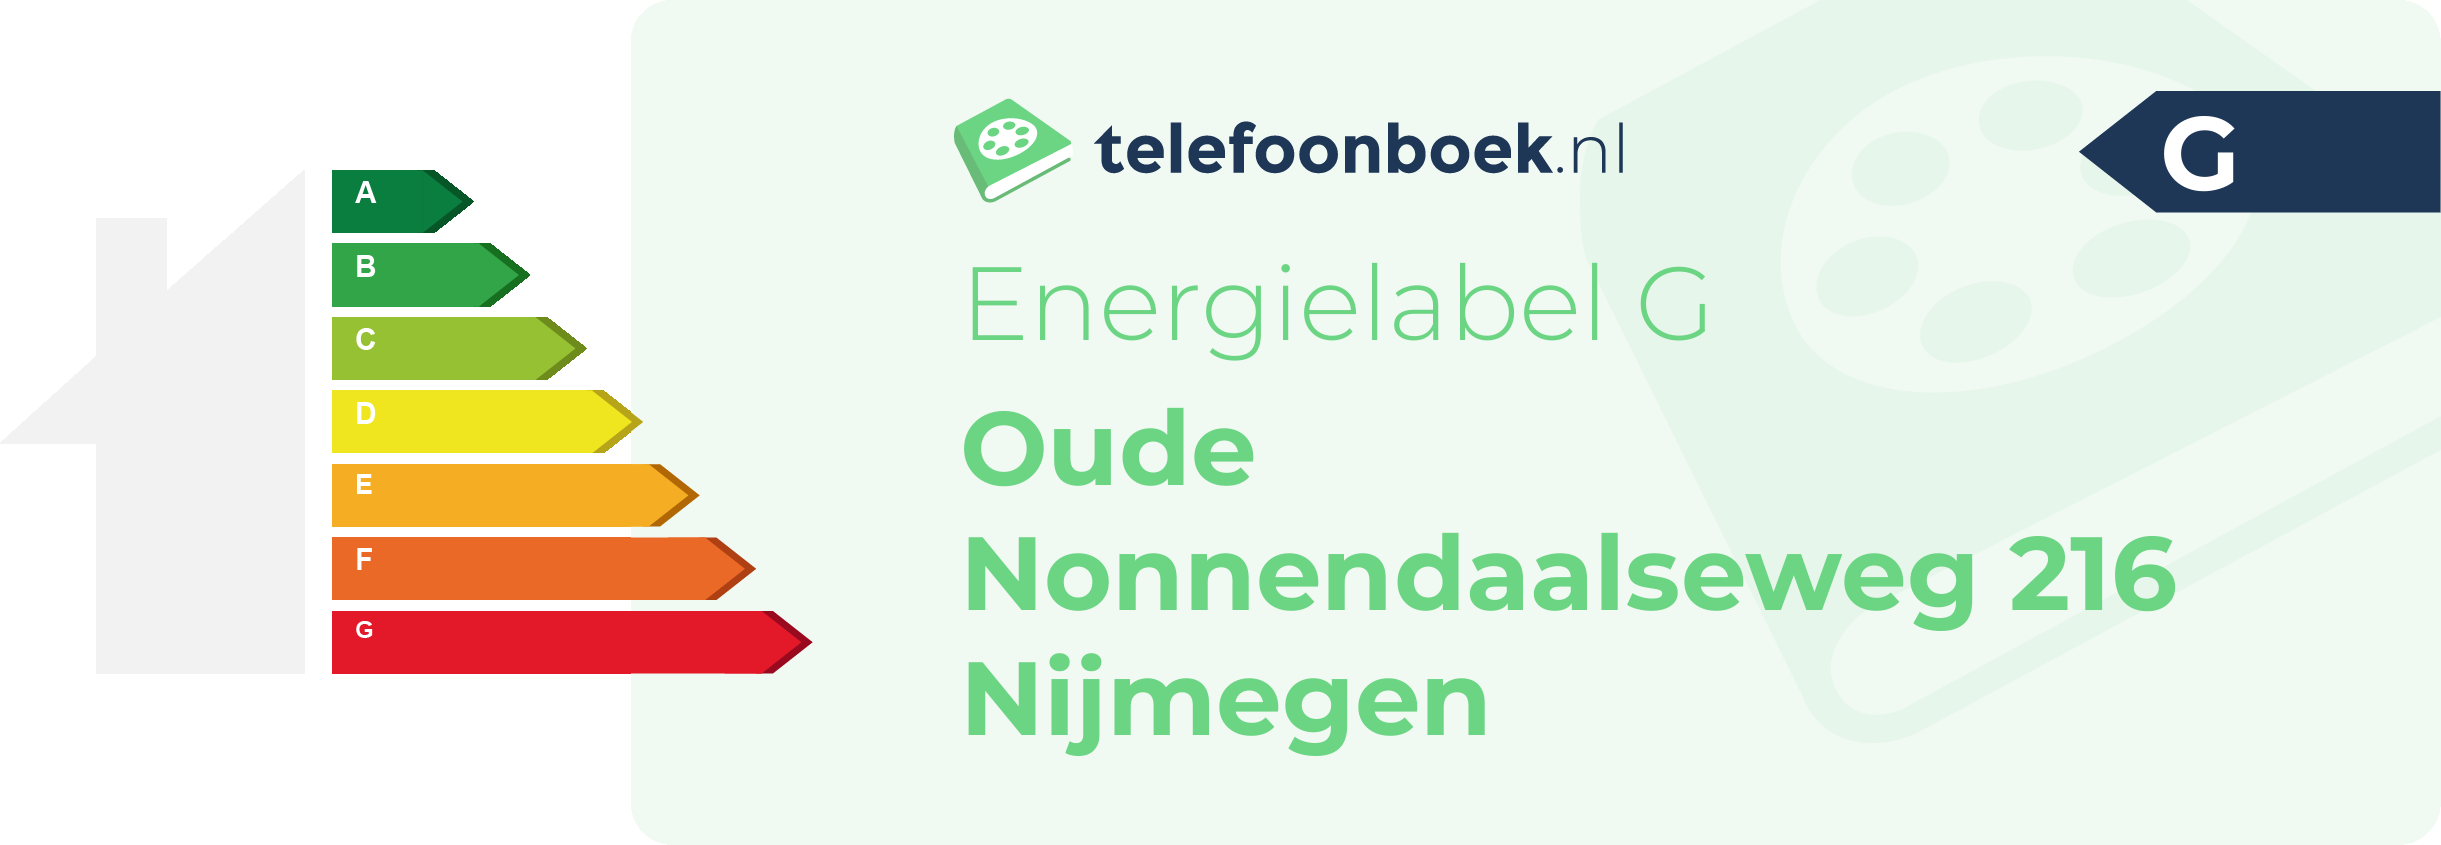 Energielabel Oude Nonnendaalseweg 216 Nijmegen